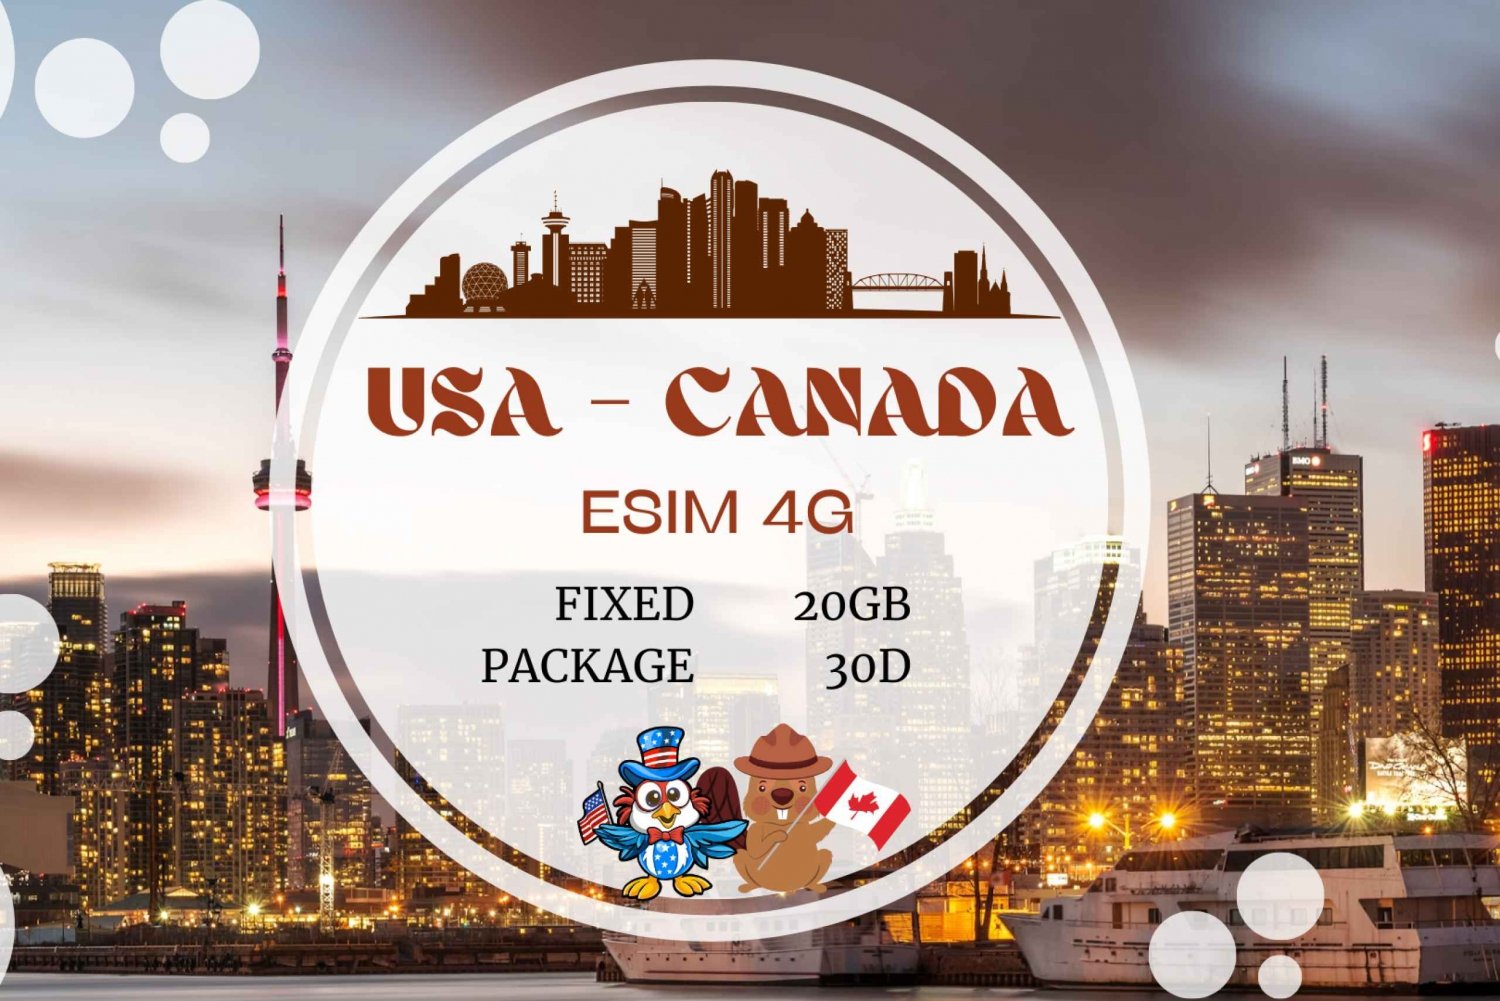 Canadá y EE.UU.: eSIM de datos ilimitados para turistas y viajes